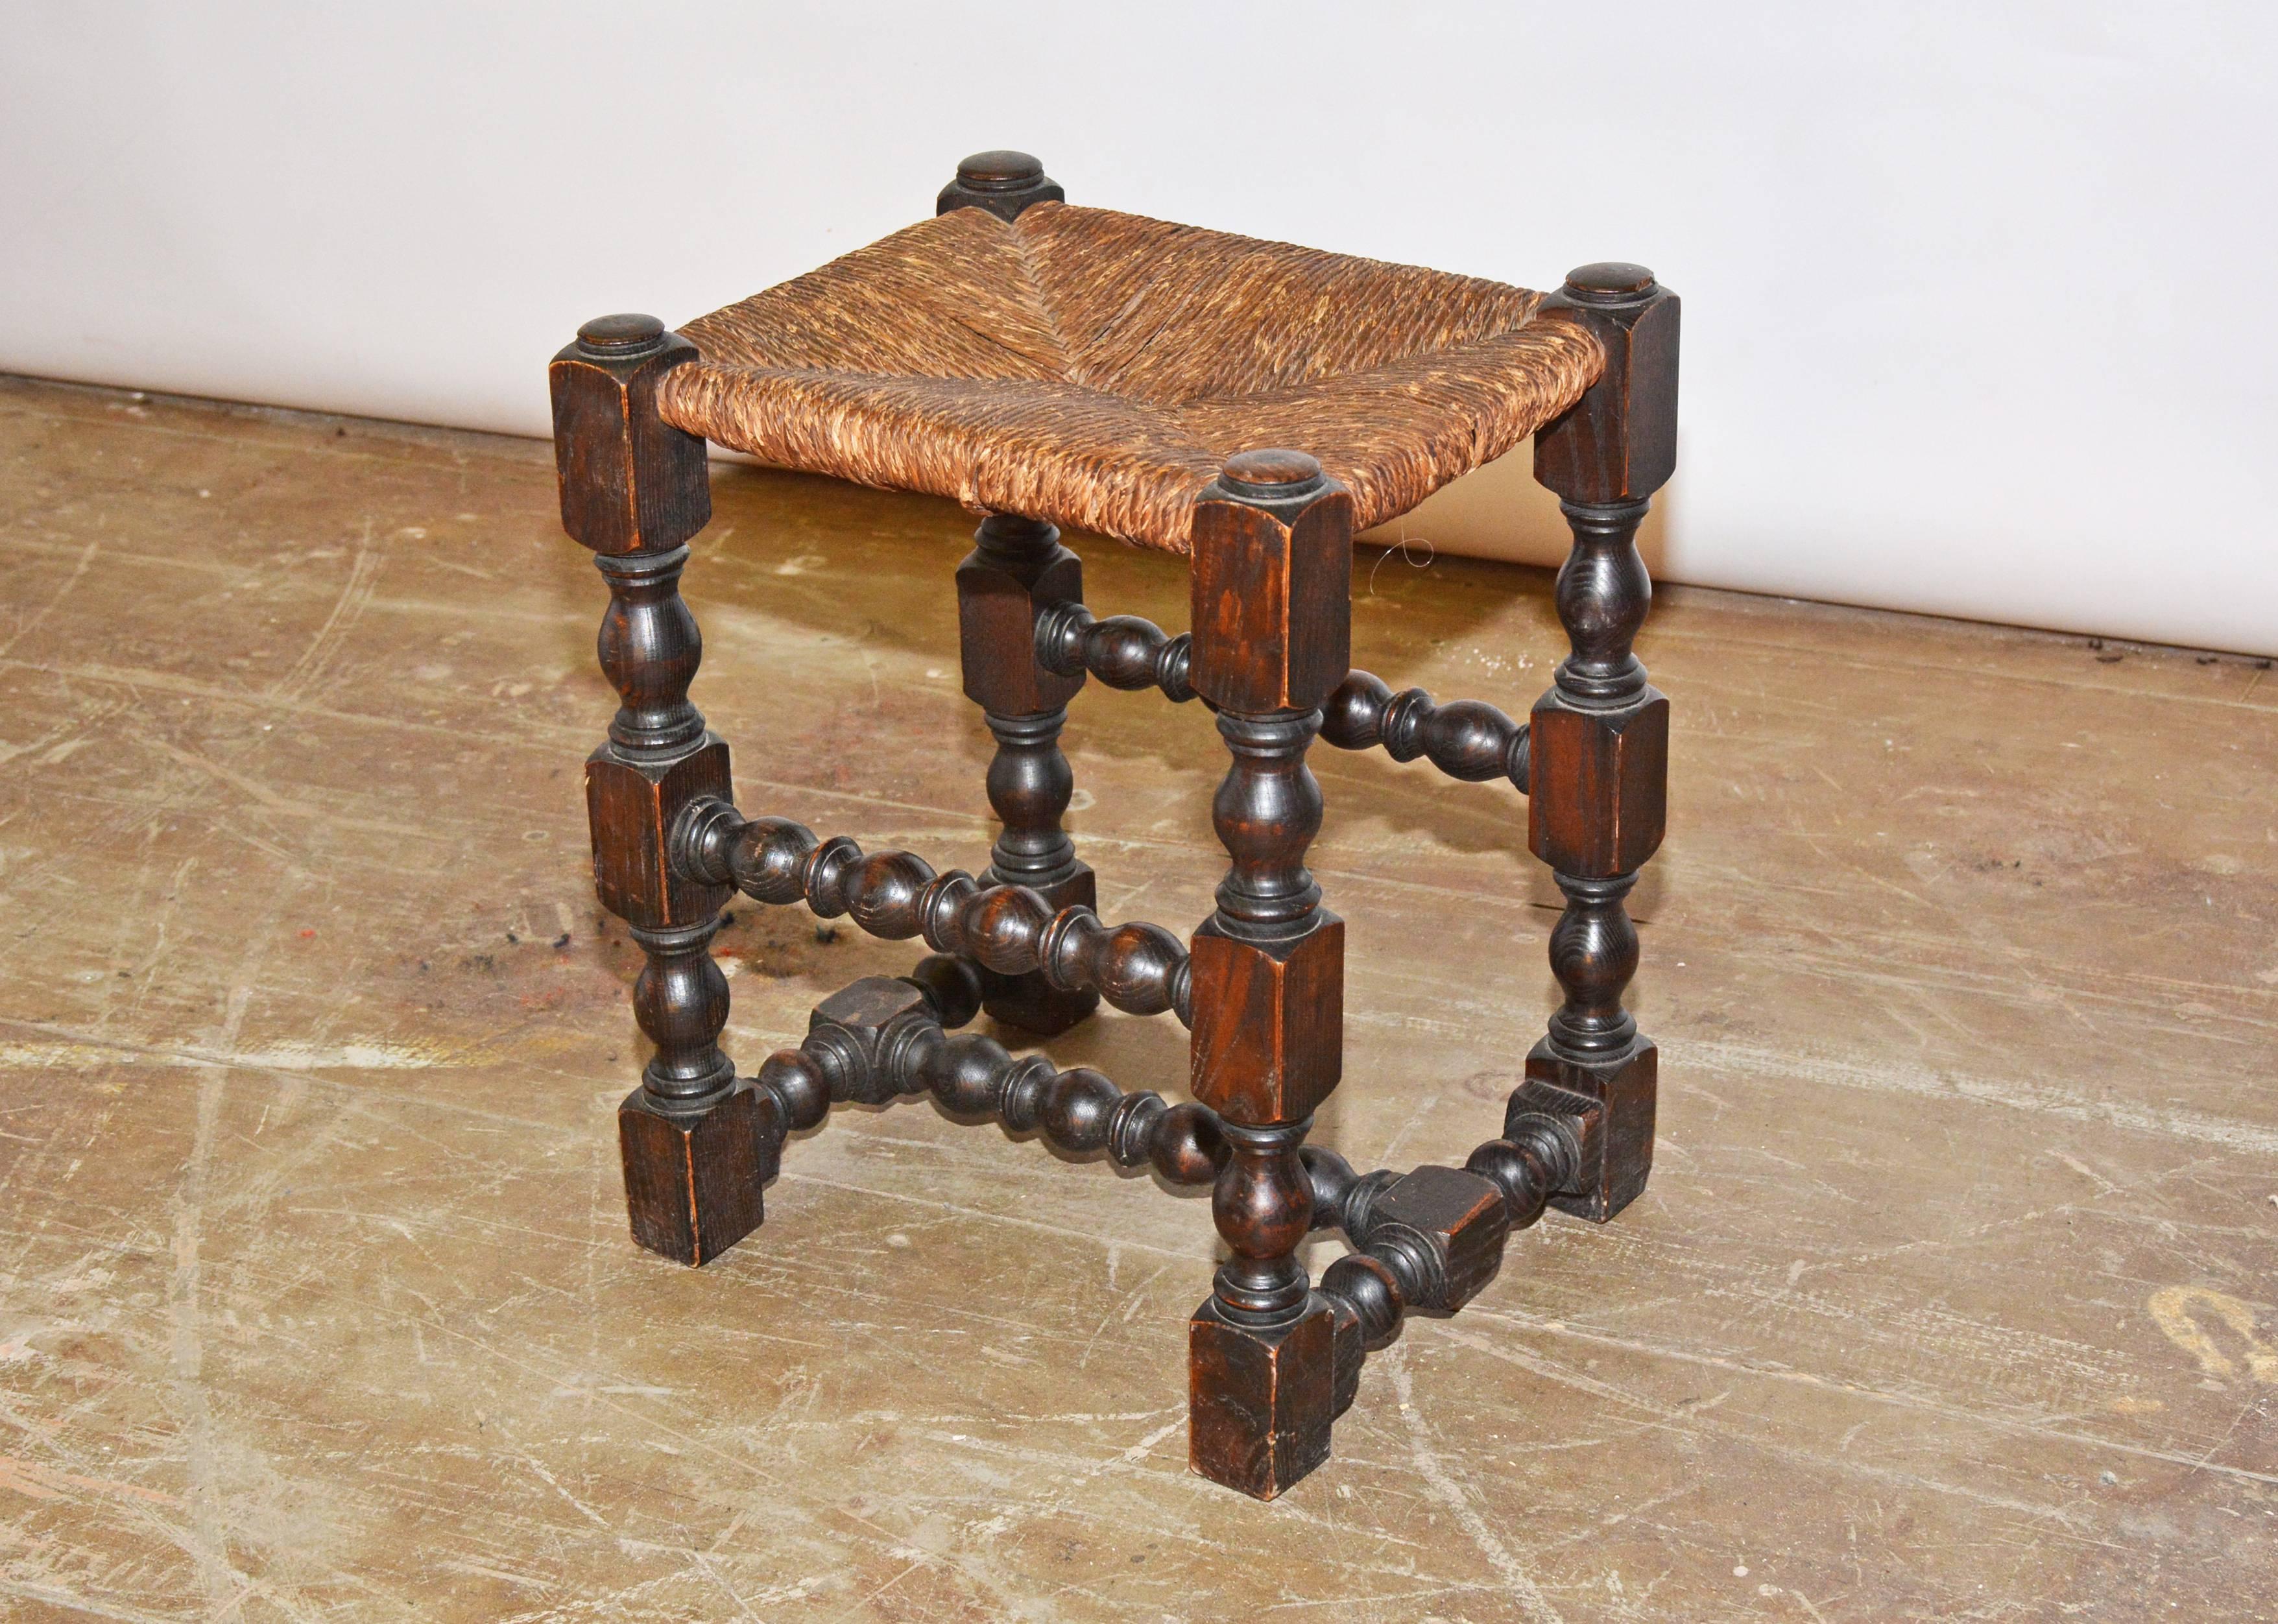 Der antike Hocker aus Hartholz mit einem Sitz aus Binsen hat kunstvoll gedrechselte Strecker und kühn gestaltete Beine.